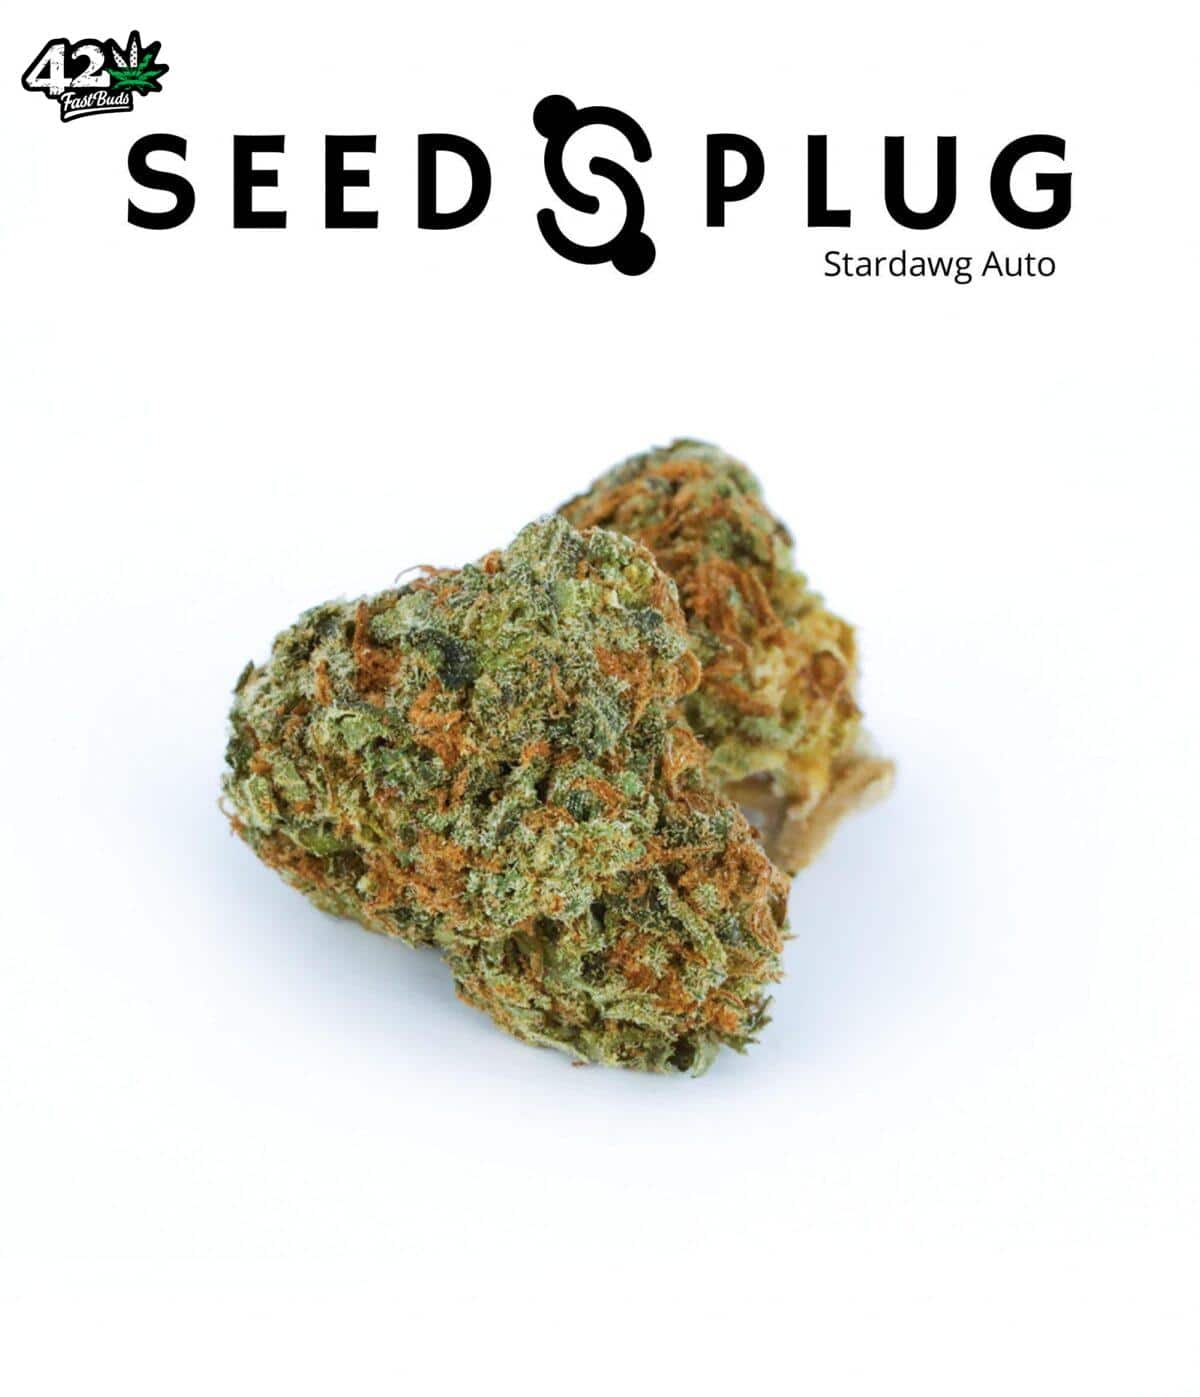 Stardawg Auto | SeedsPlug